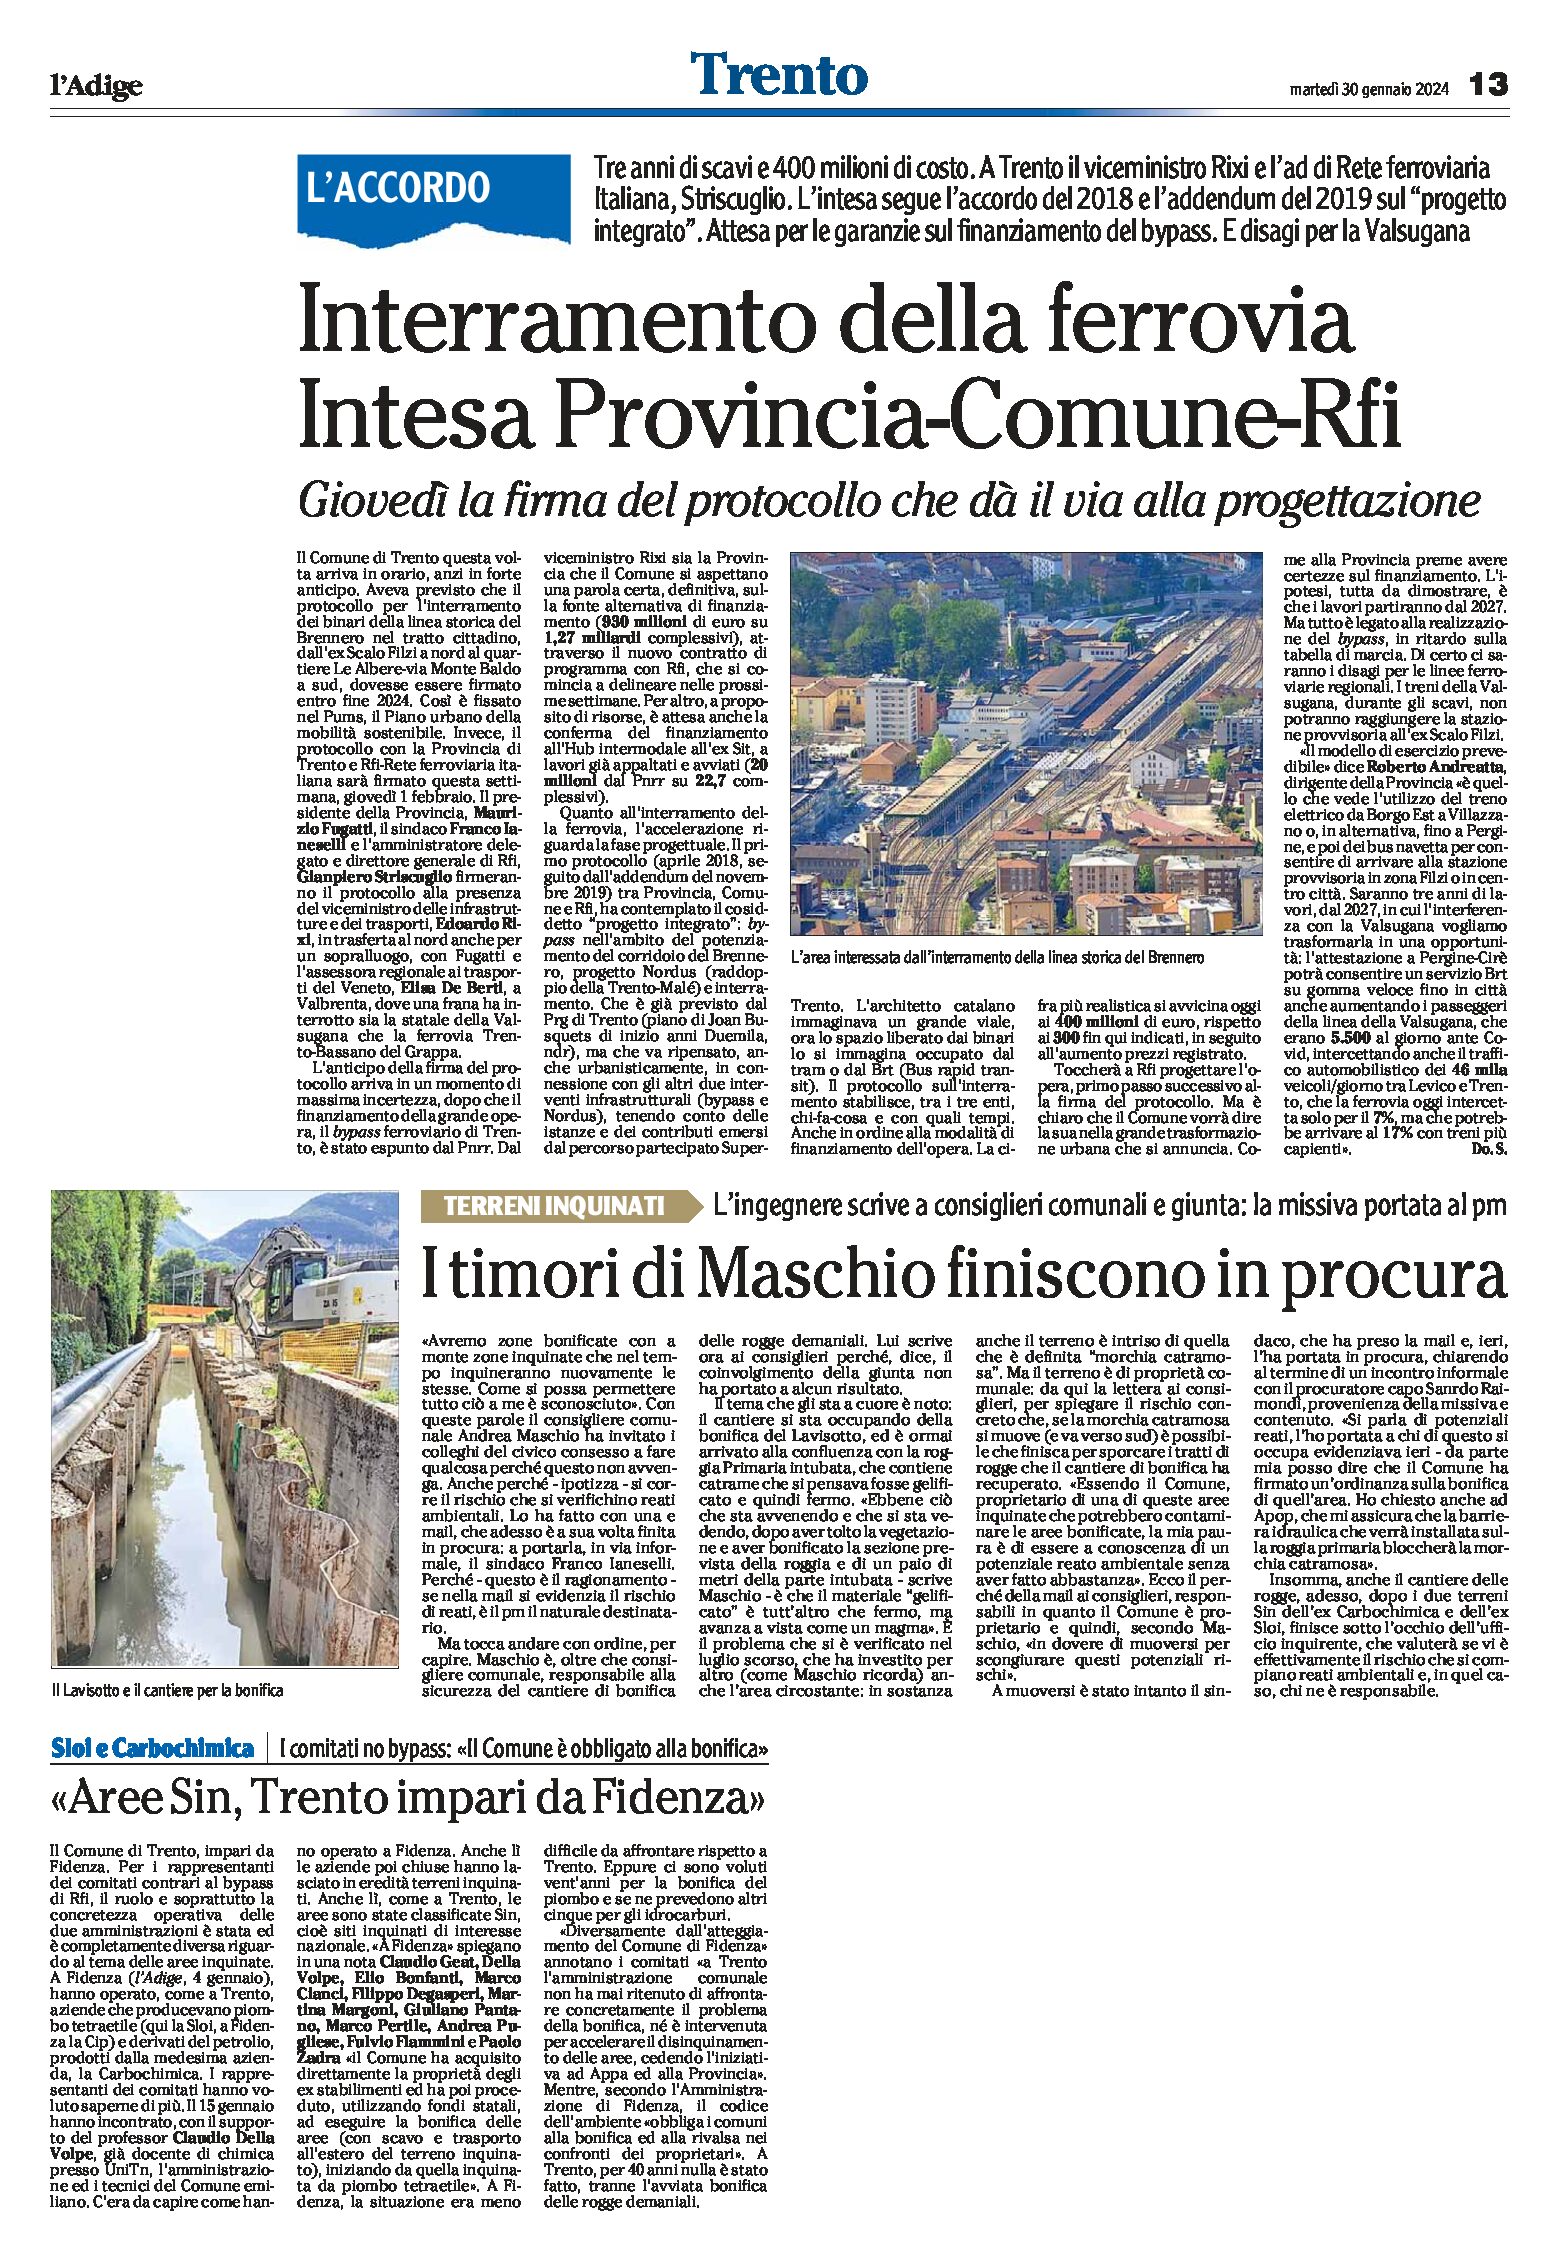 Trento: interramento della ferrovia, intesa Provincia-Comune-Rfi